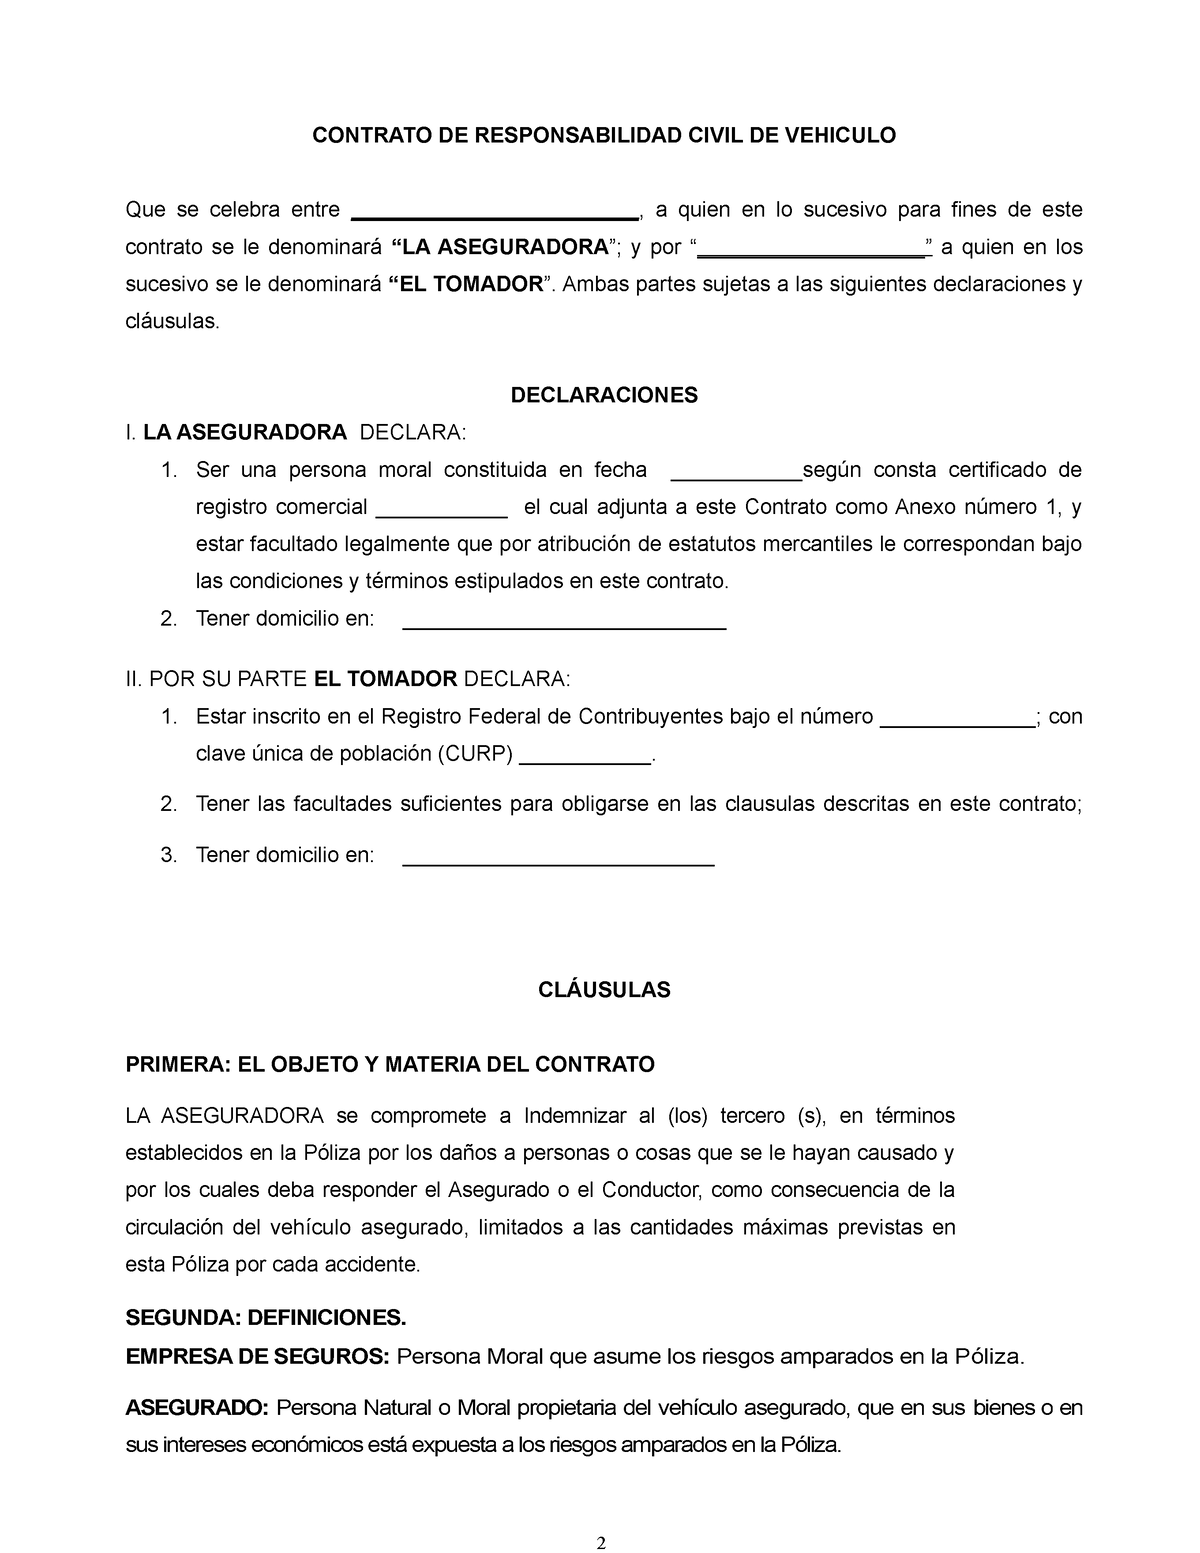 Modelo de contrato de seguro en Word - CONTRATO DE RESPONSABILIDAD CIVIL DE  VEHICULO Que se celebra - Studocu